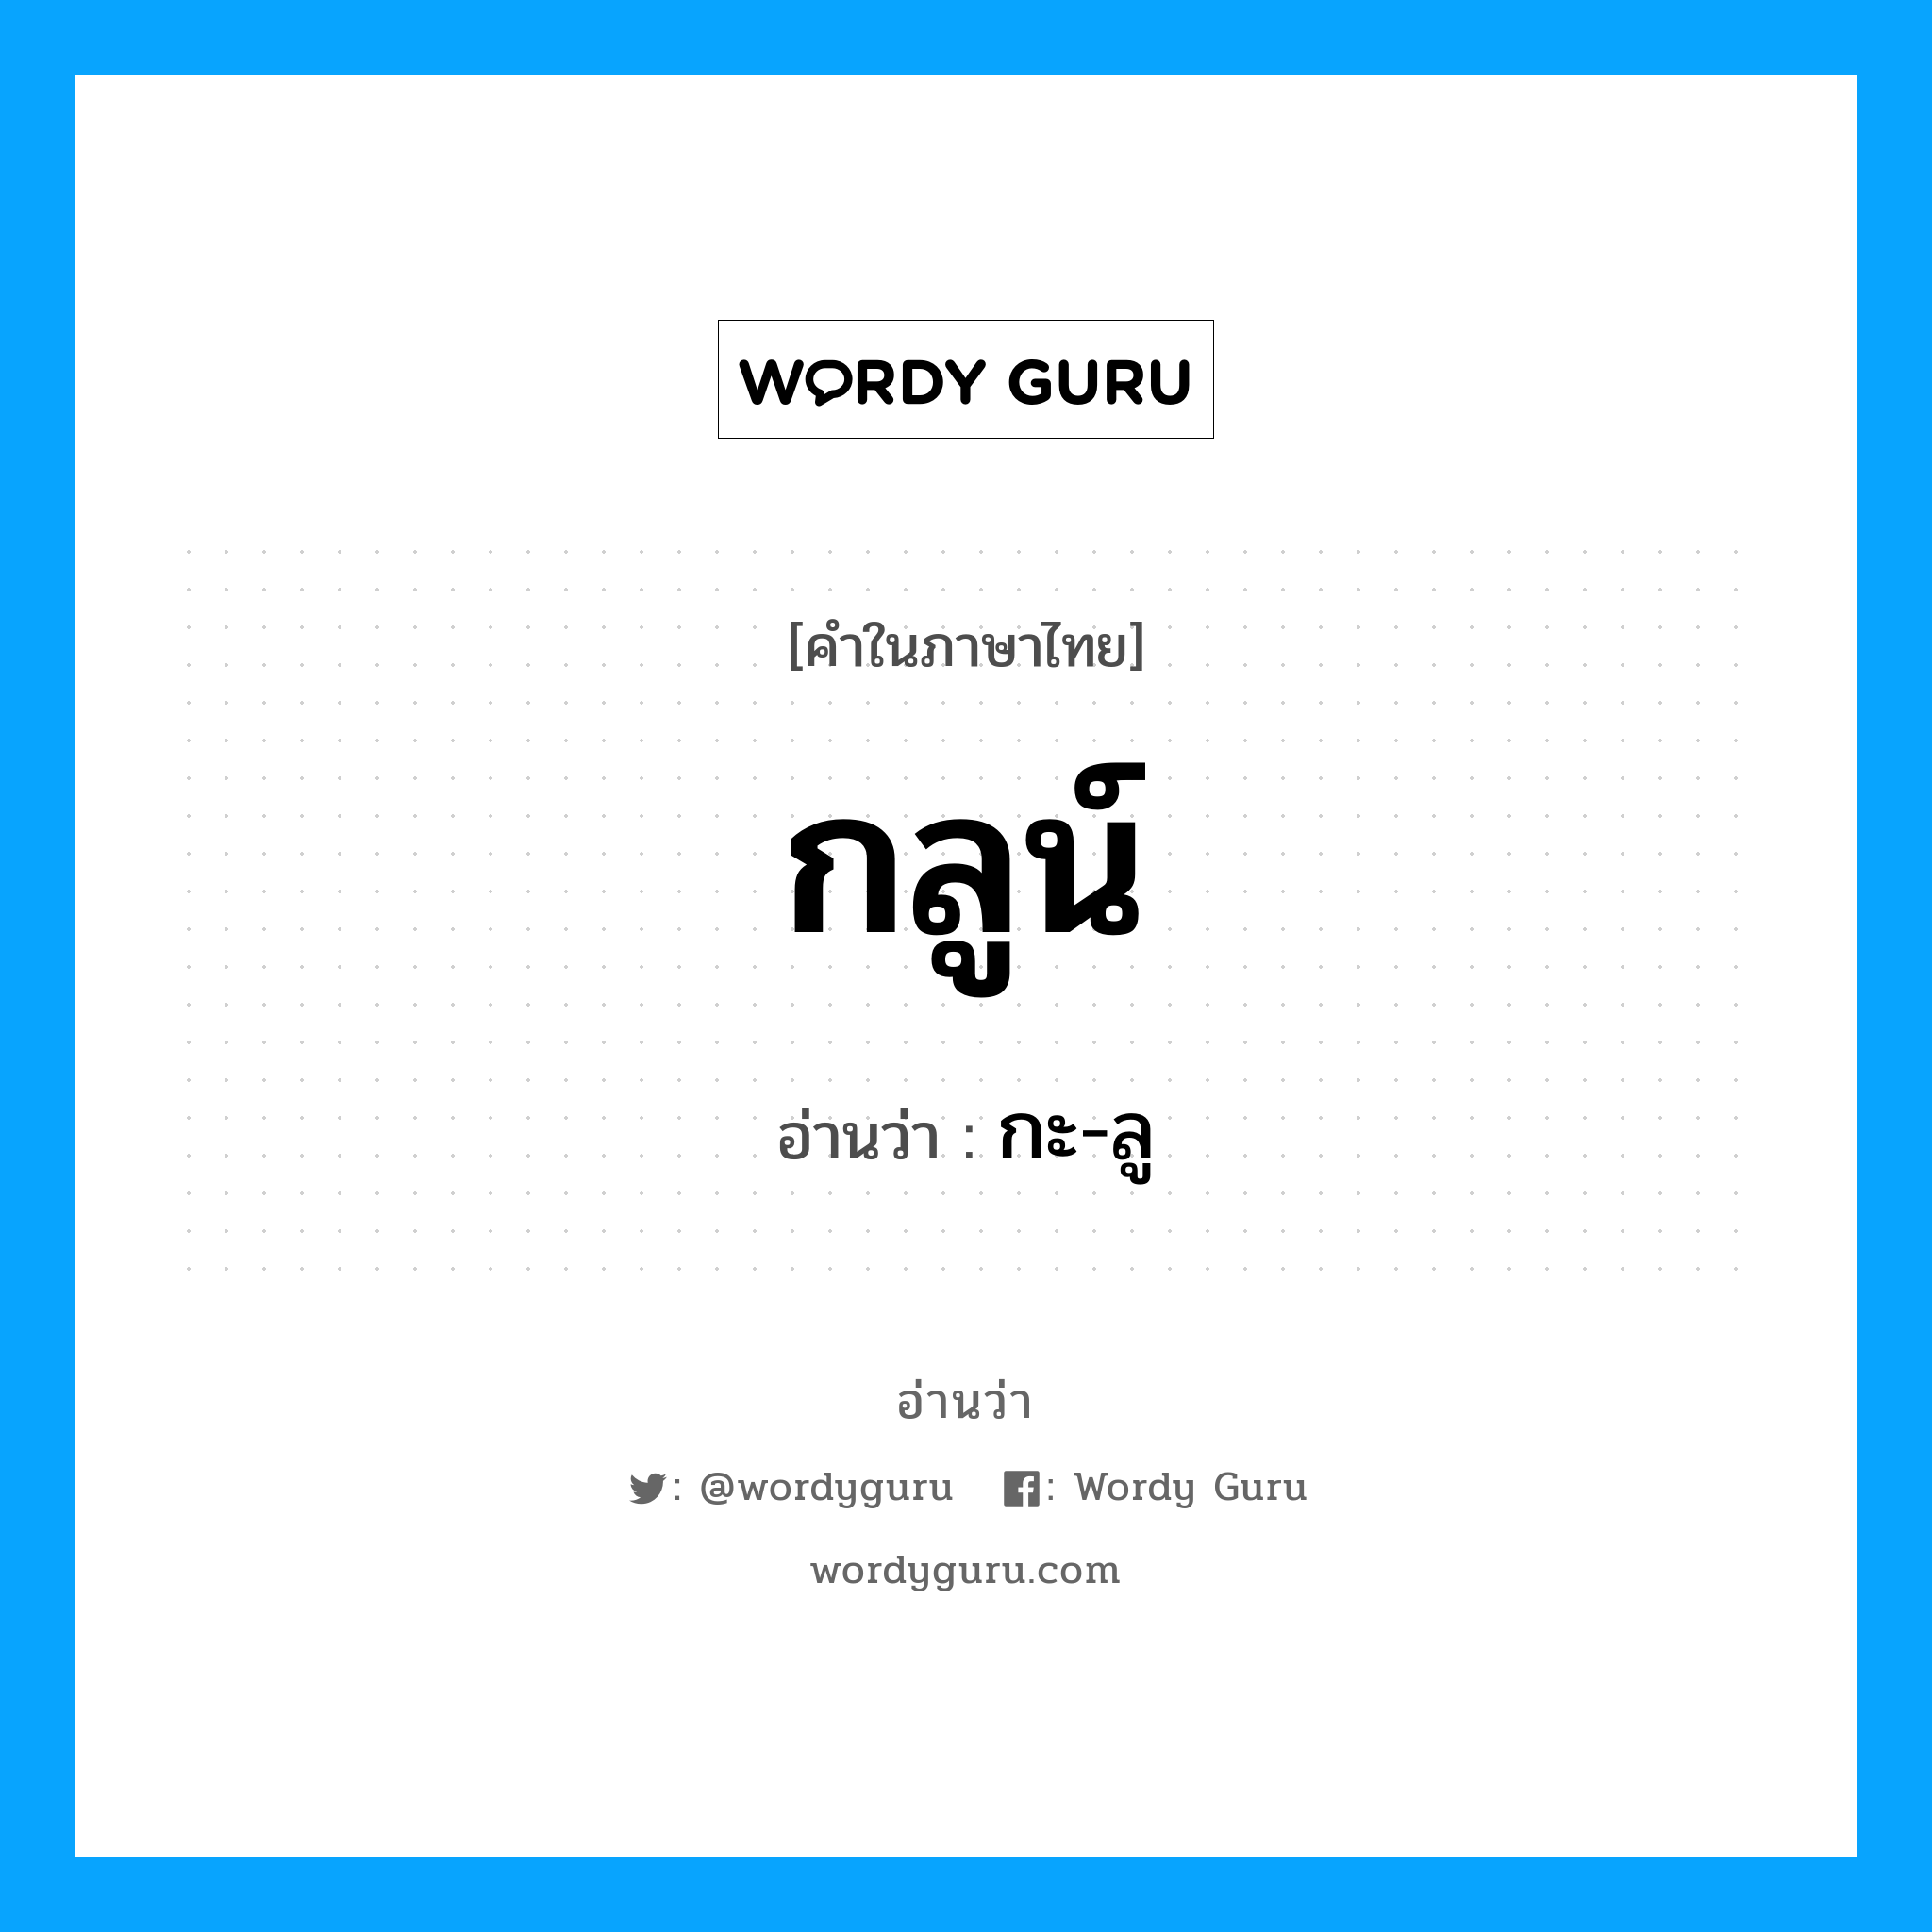 กะ-ลู เป็นคำอ่านของคำไหน?, คำในภาษาไทย กะ-ลู อ่านว่า กลูน์